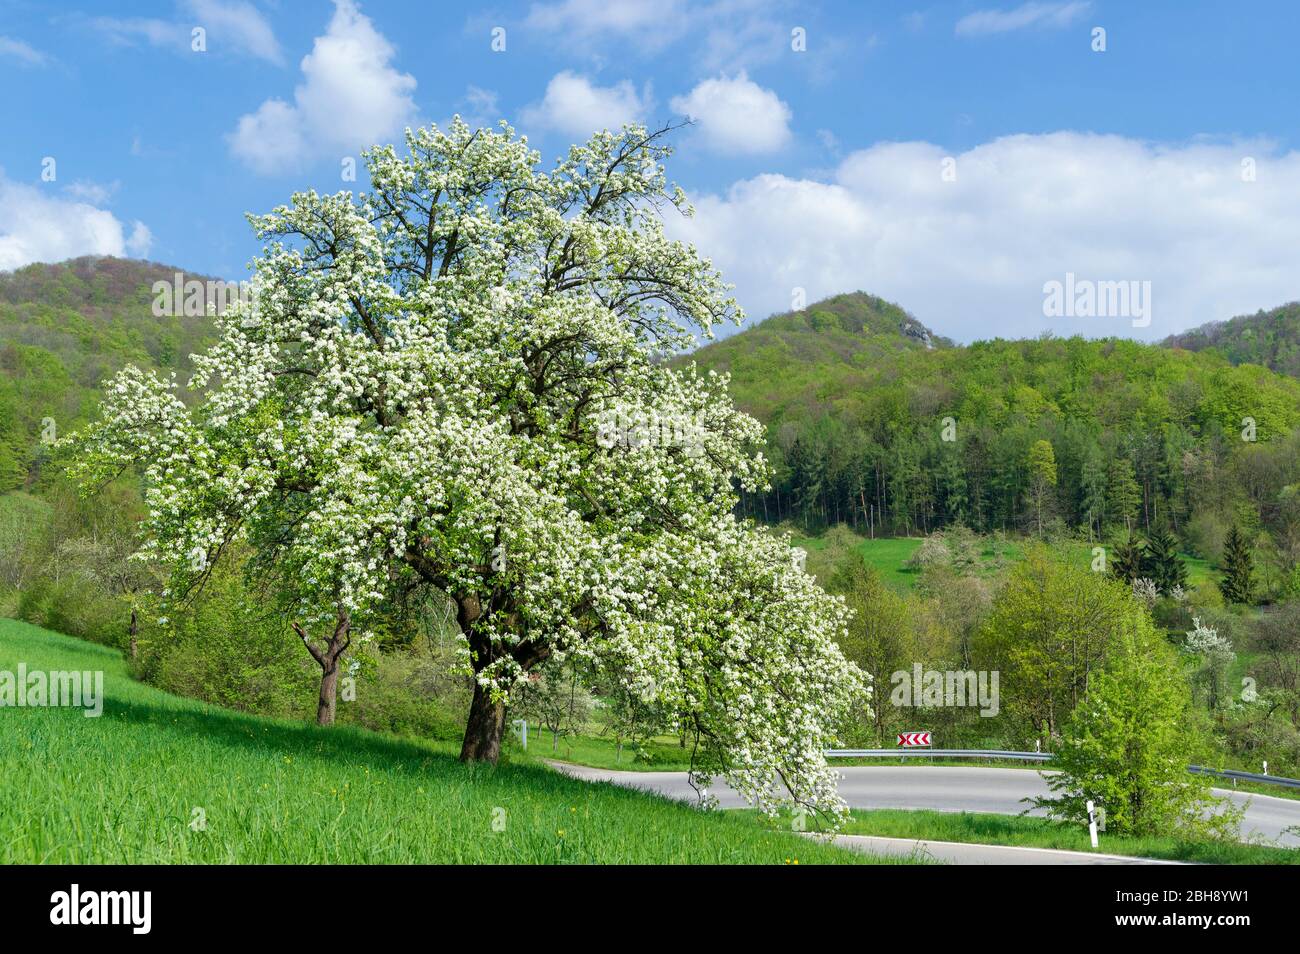 Allemagne, Bade-Wurtemberg, Eningen, blühender Birnbaum auf einer Wiese am Albtrauf Banque D'Images